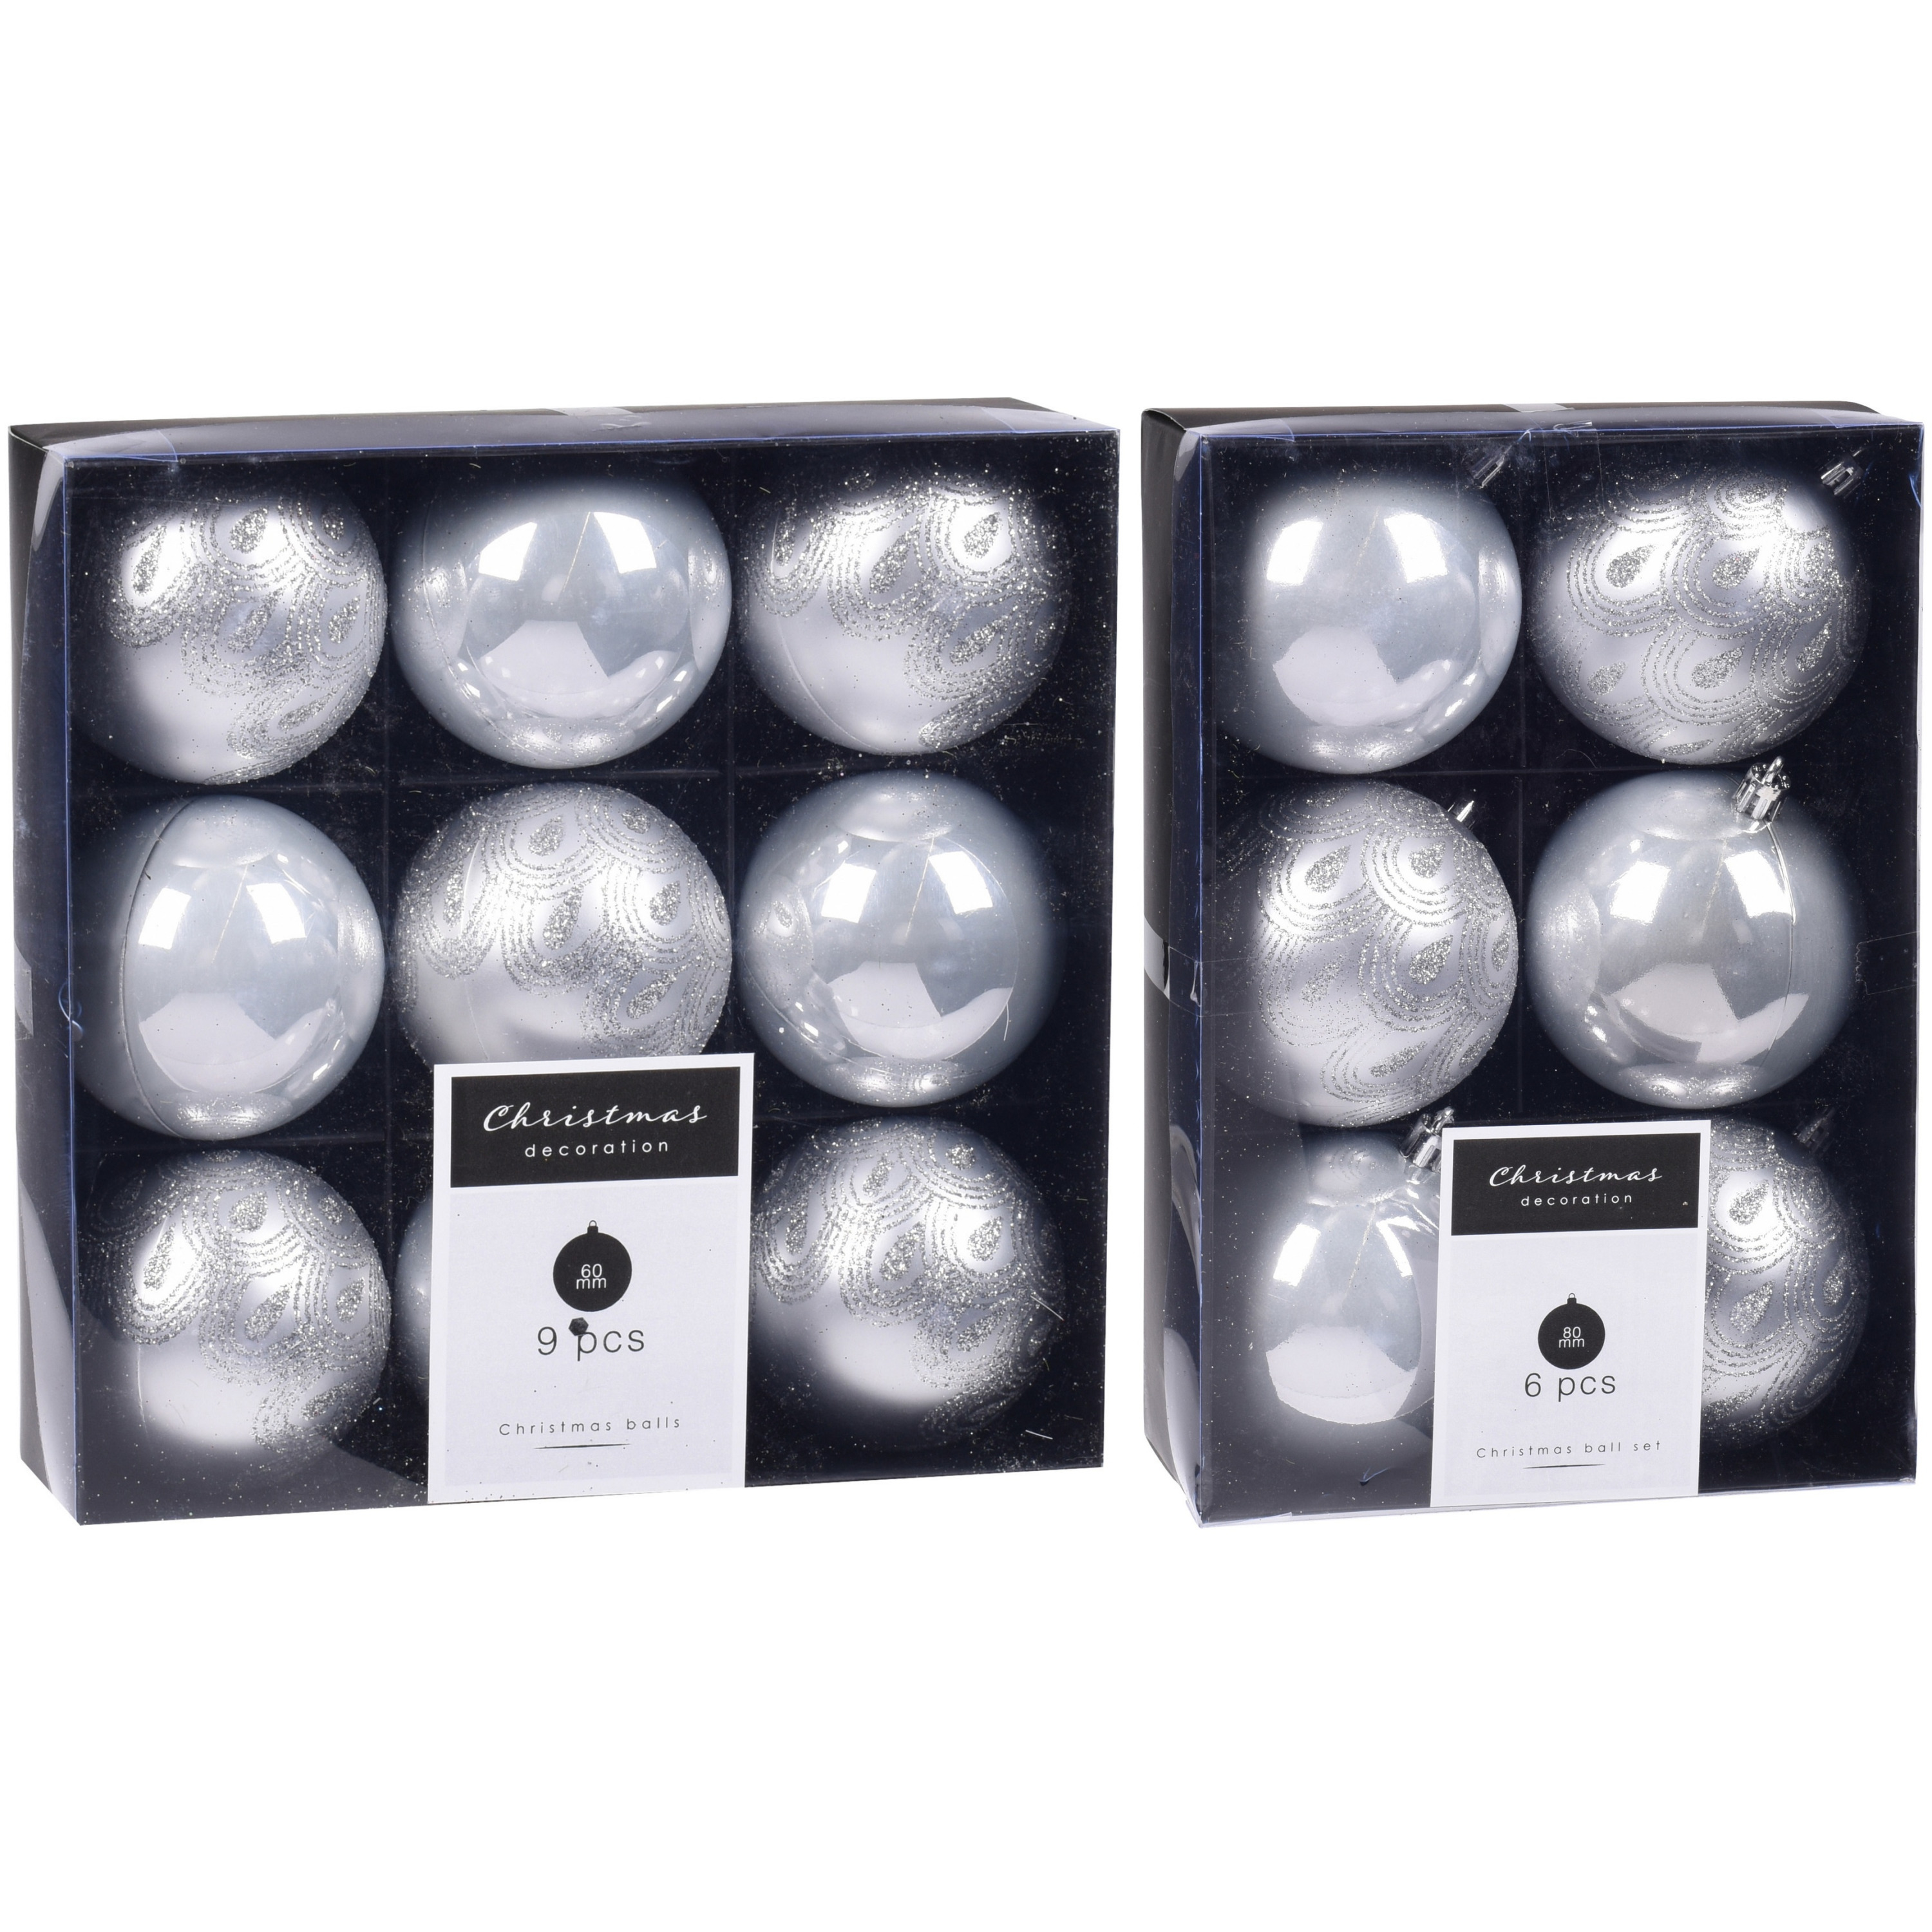 Kerstversiering kunststof kerstballen zilver 6 en 8 cm pakket van 30x stuks